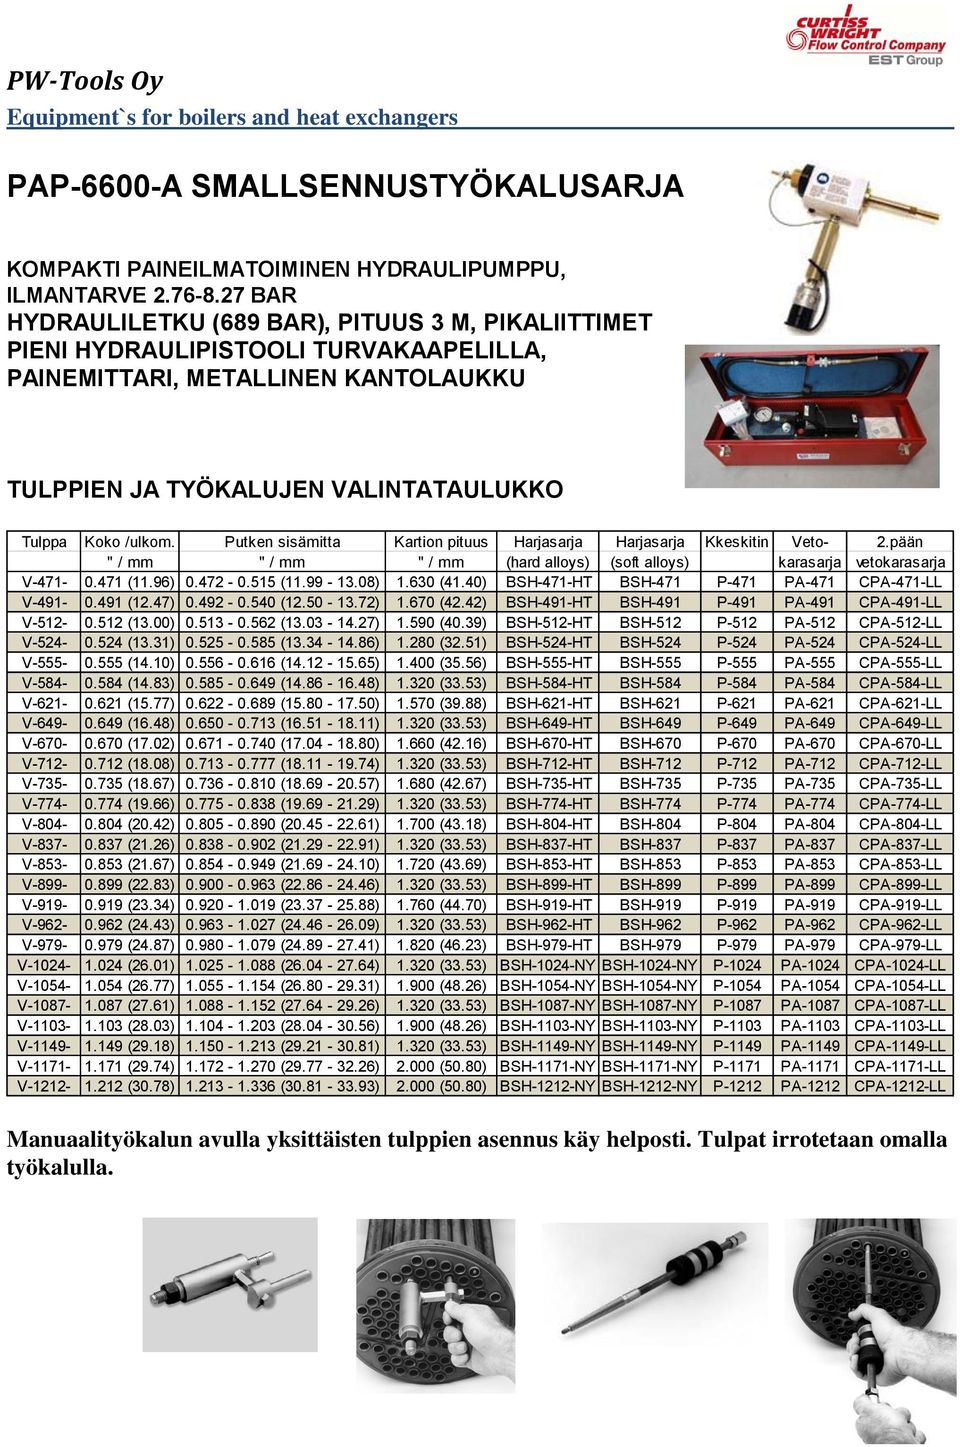 Putken sisämitta Kartion pituus Harjasarja Harjasarja Kkeskitin Veto- 2.pään " / mm " / mm " / mm (hard alloys) (soft alloys) karasarja vetokarasarja V-471-0.471 (11.96) 0.472-0.515 (11.99-13.08) 1.